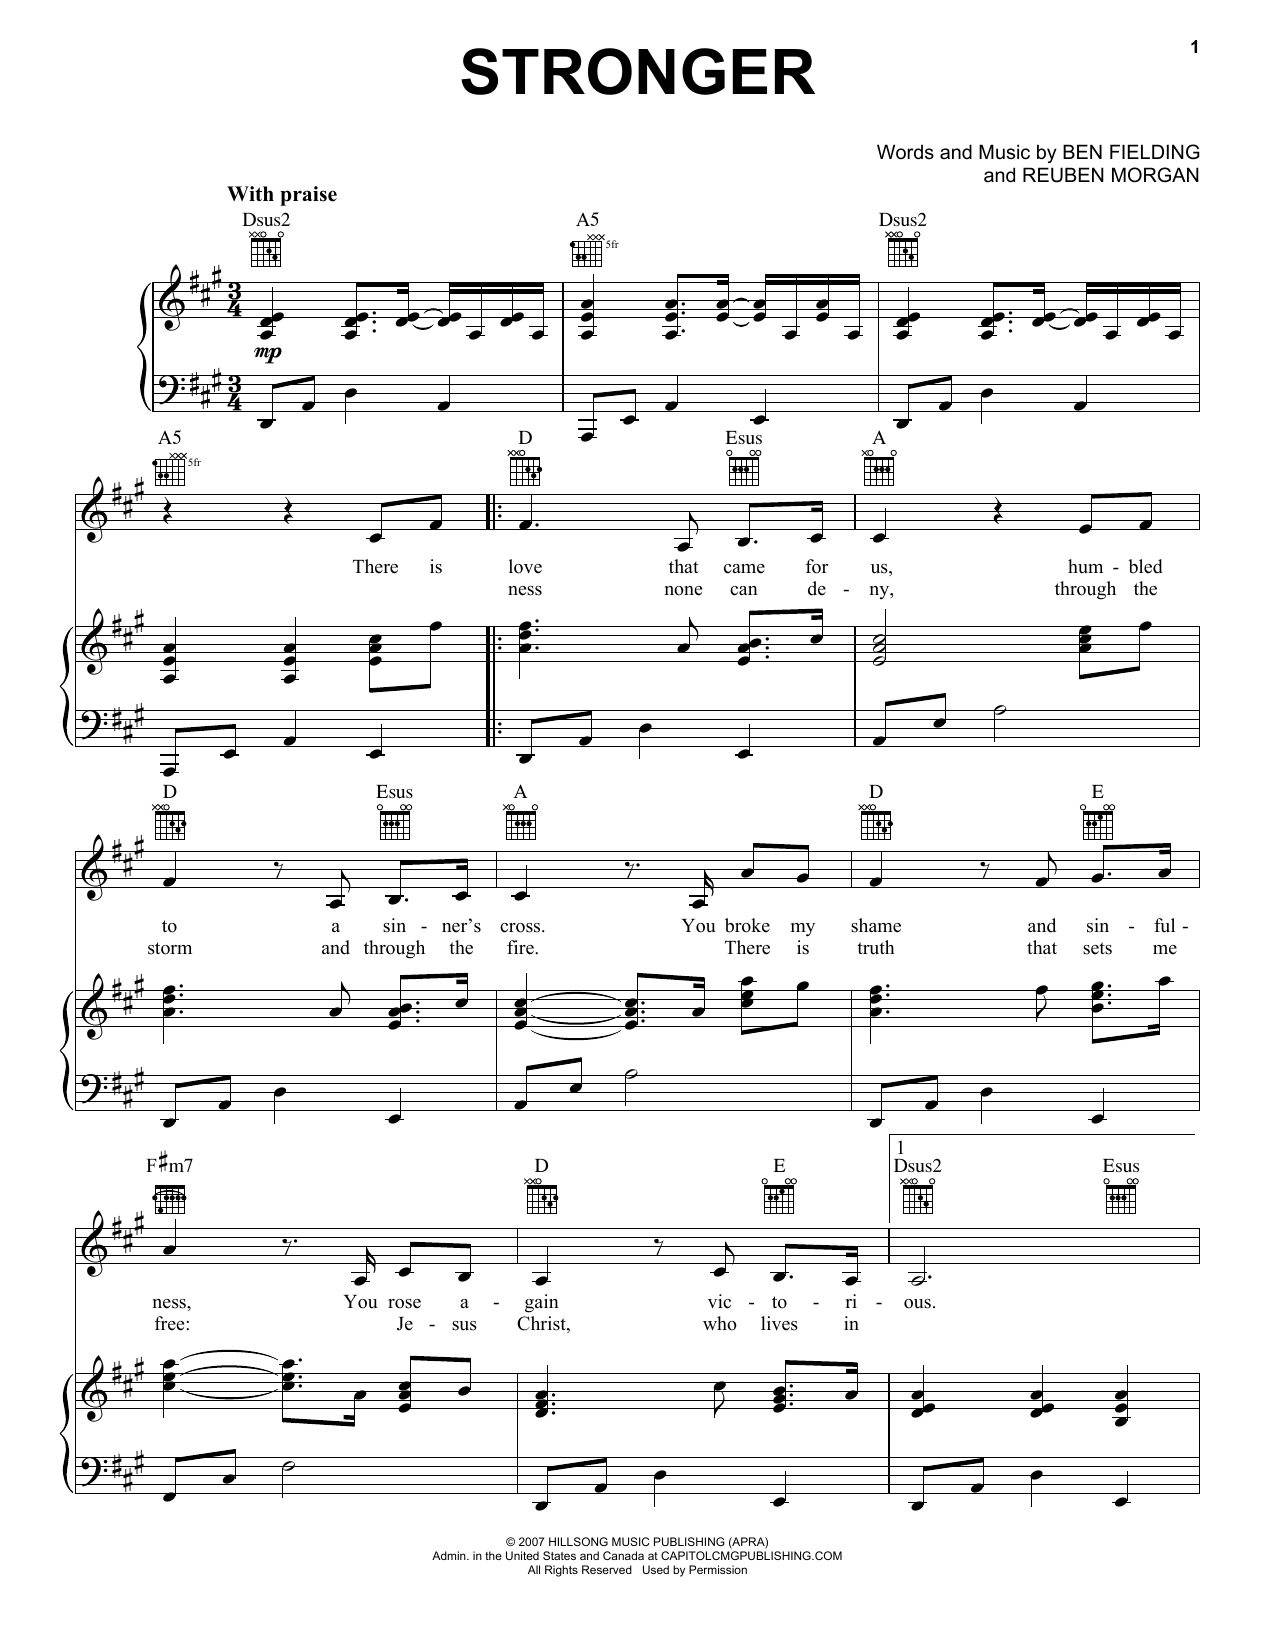 Reuben Morgan Stronger Sheet Music Notes & Chords for Lyrics & Chords - Download or Print PDF